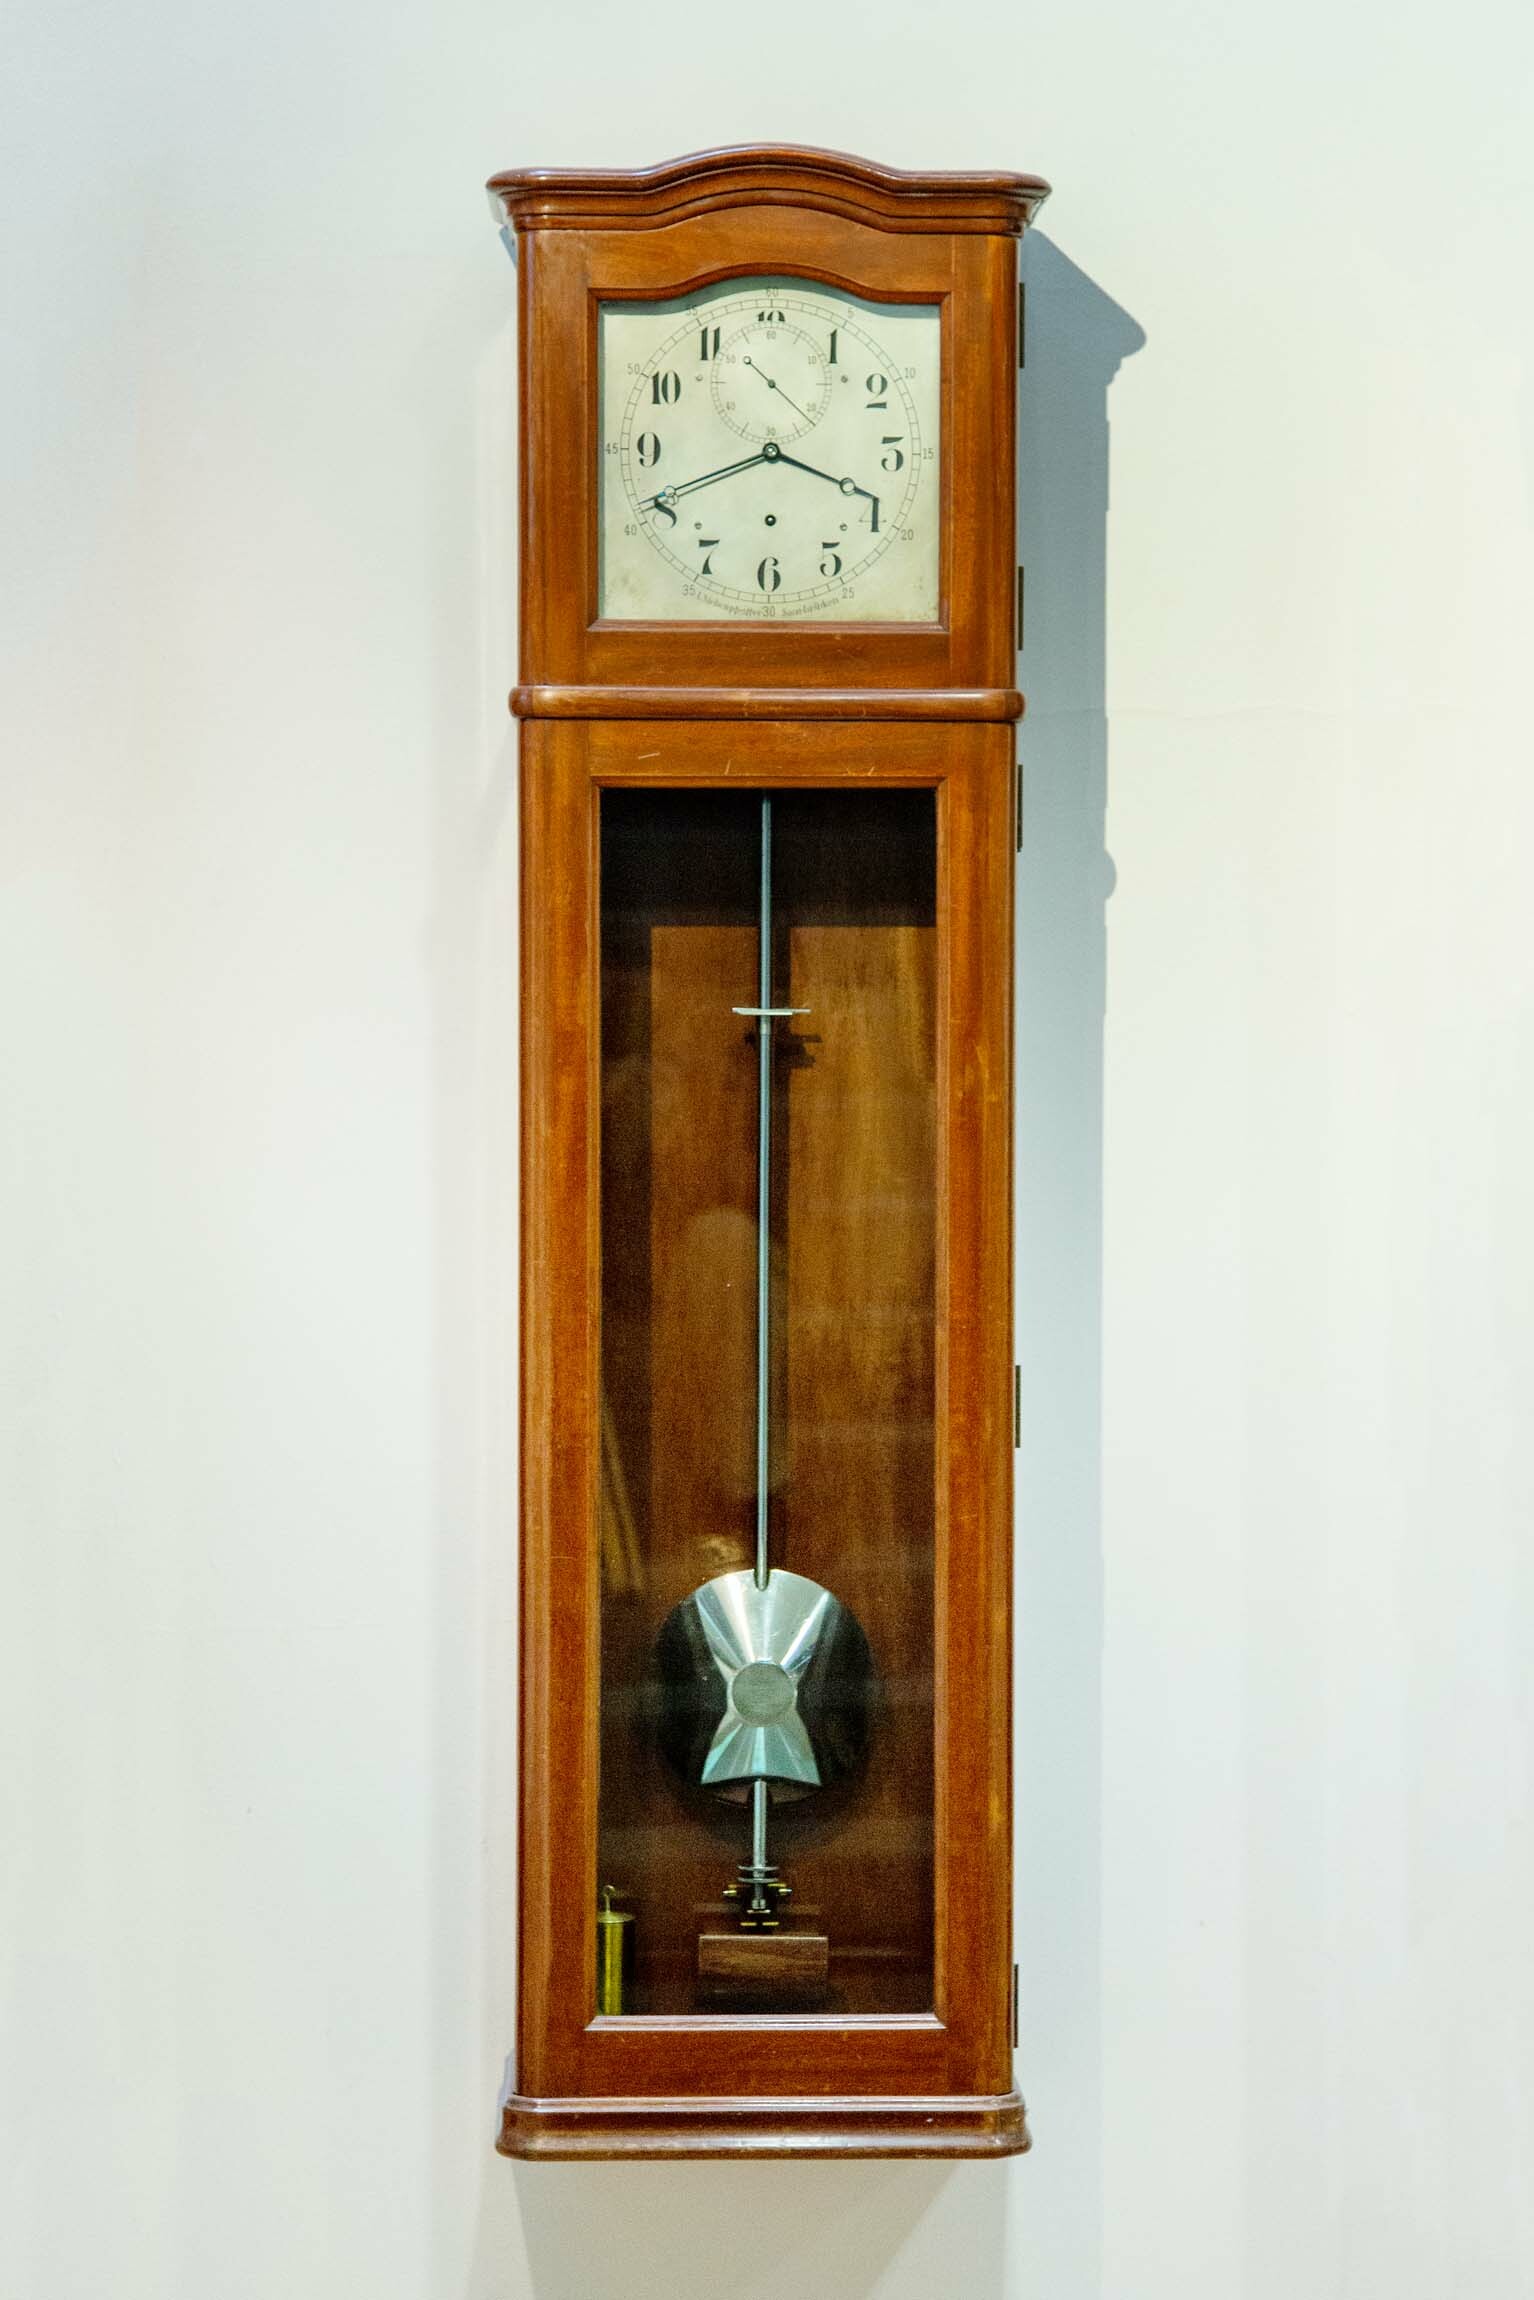 Präzisionspendeluhr, Paul Stübner, Glashütte, Ludwig Siebenpfeiffer, Saarbrücken, um 1920 (Deutsches Uhrenmuseum CC BY-SA)